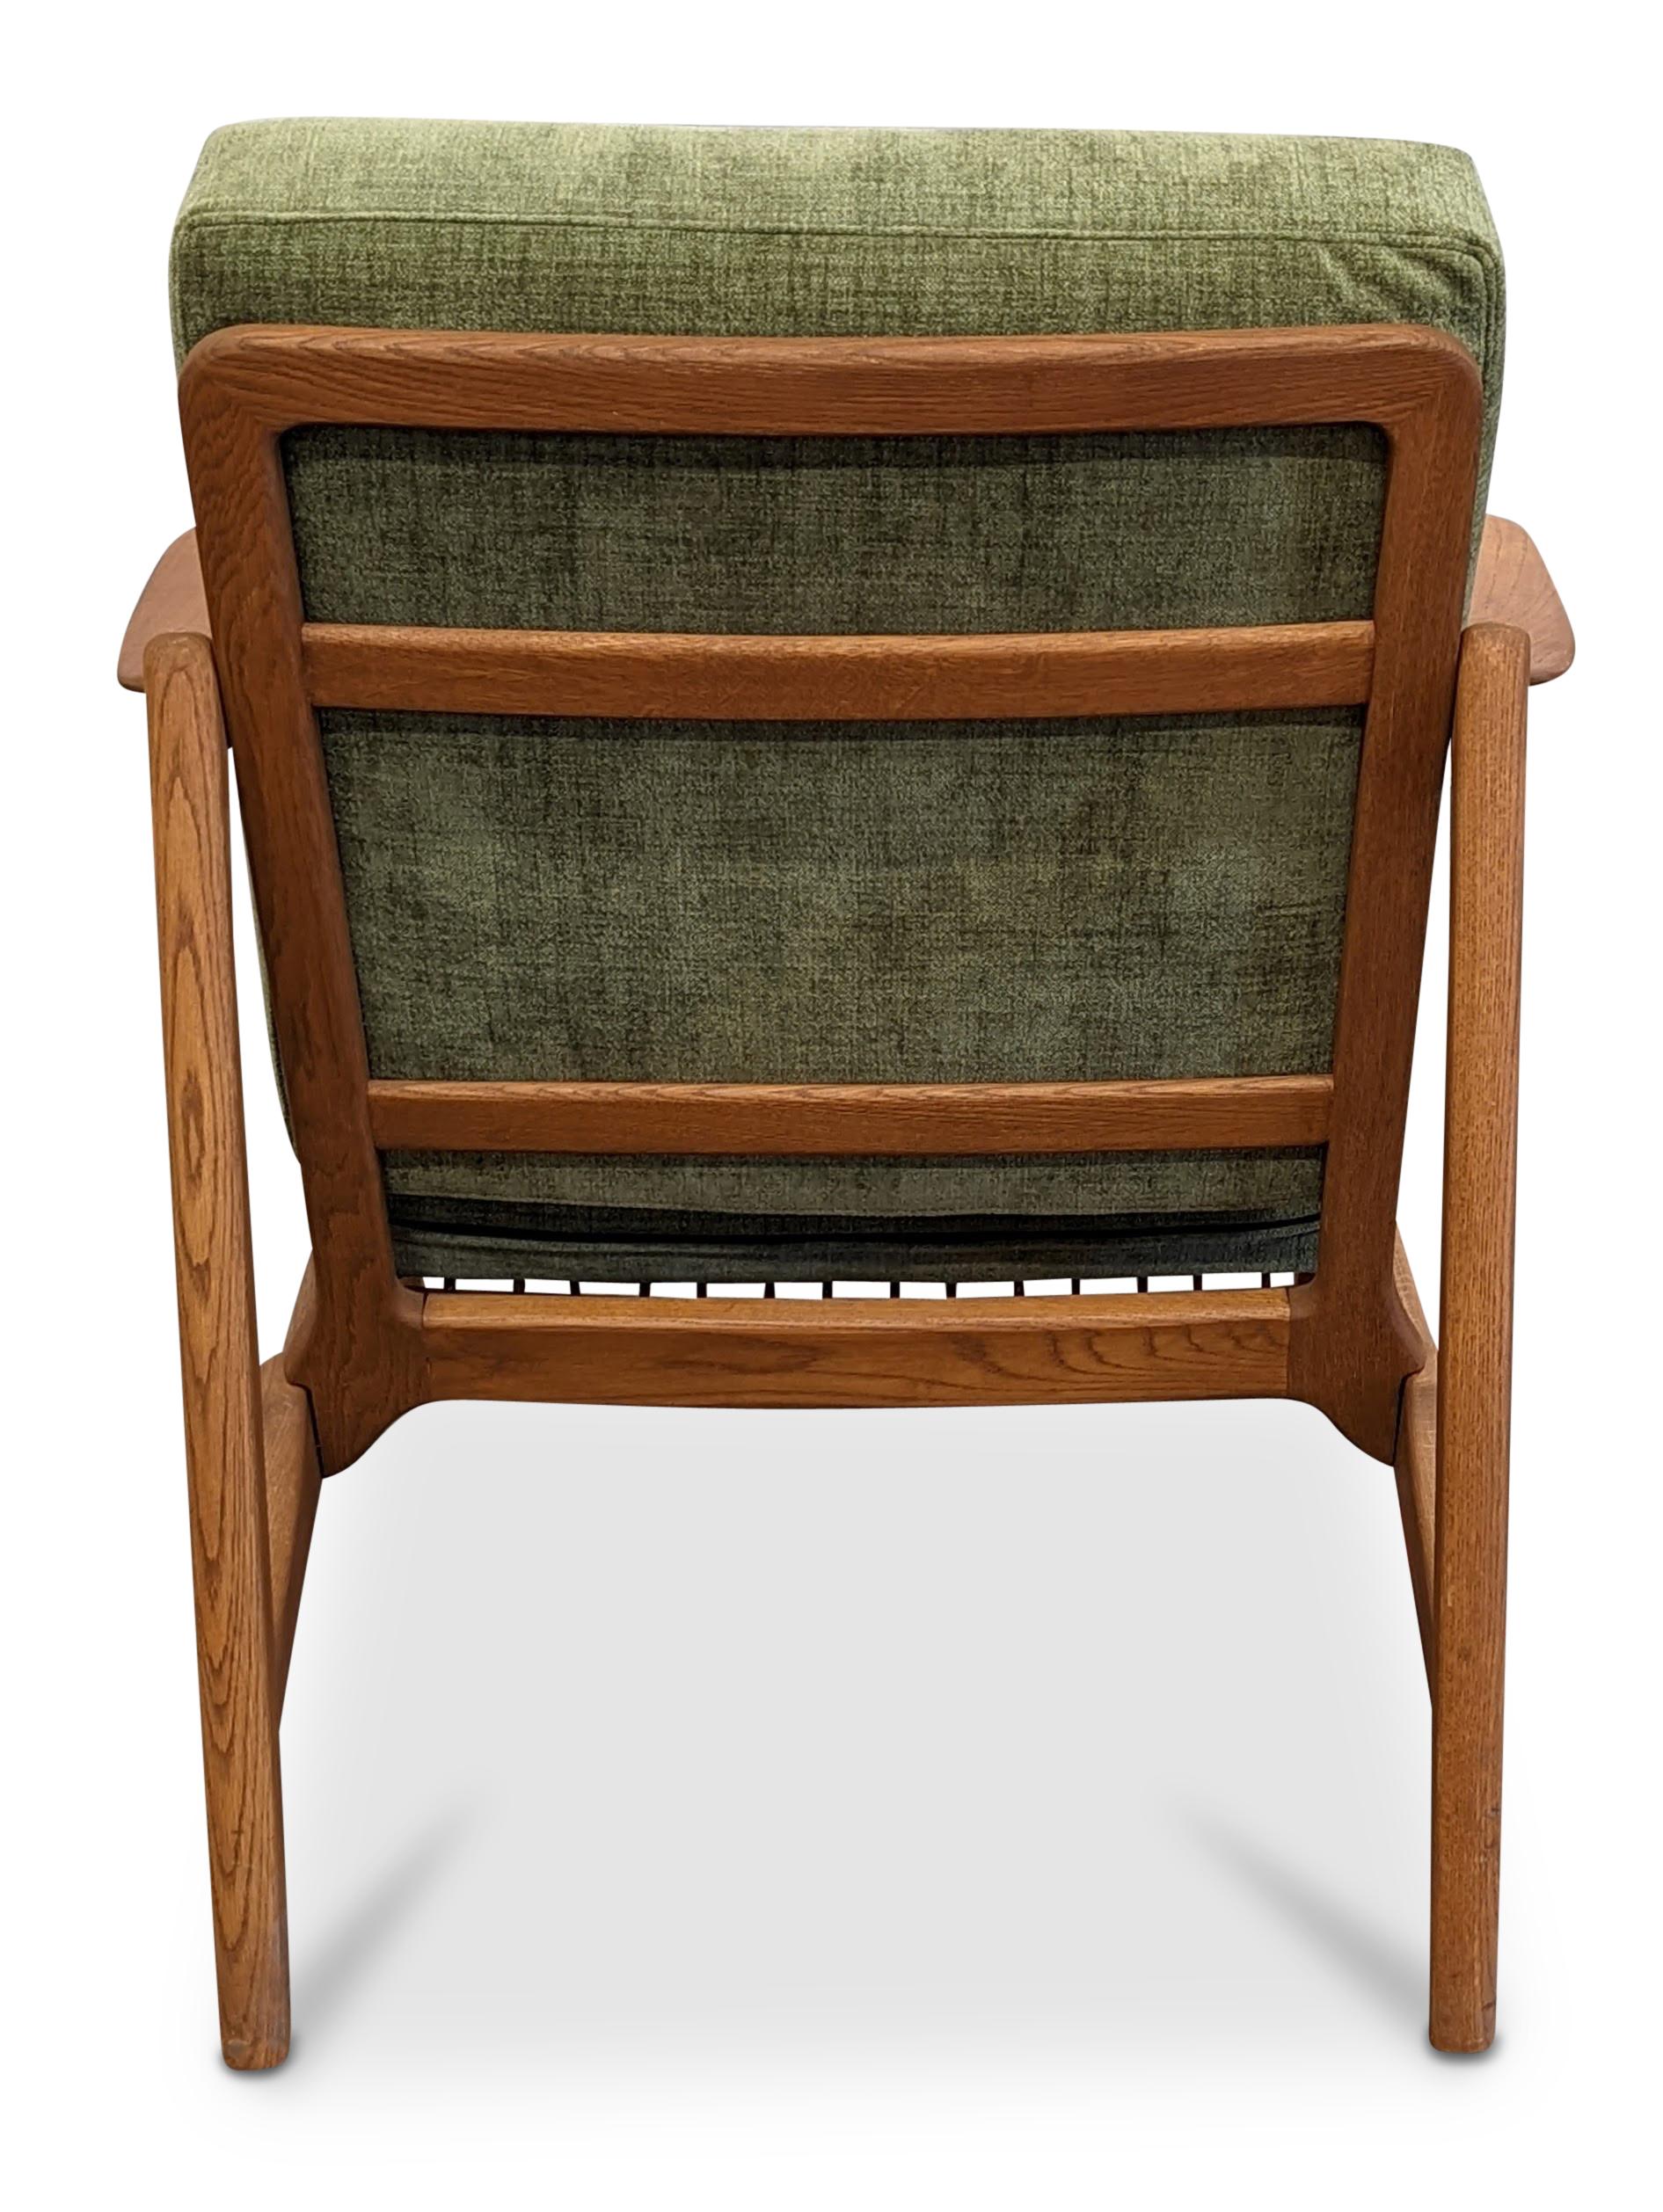 Vintage Tove & Edvard Kindt-Larsen Teak Lounge Chair, Danish Mid-Century 1